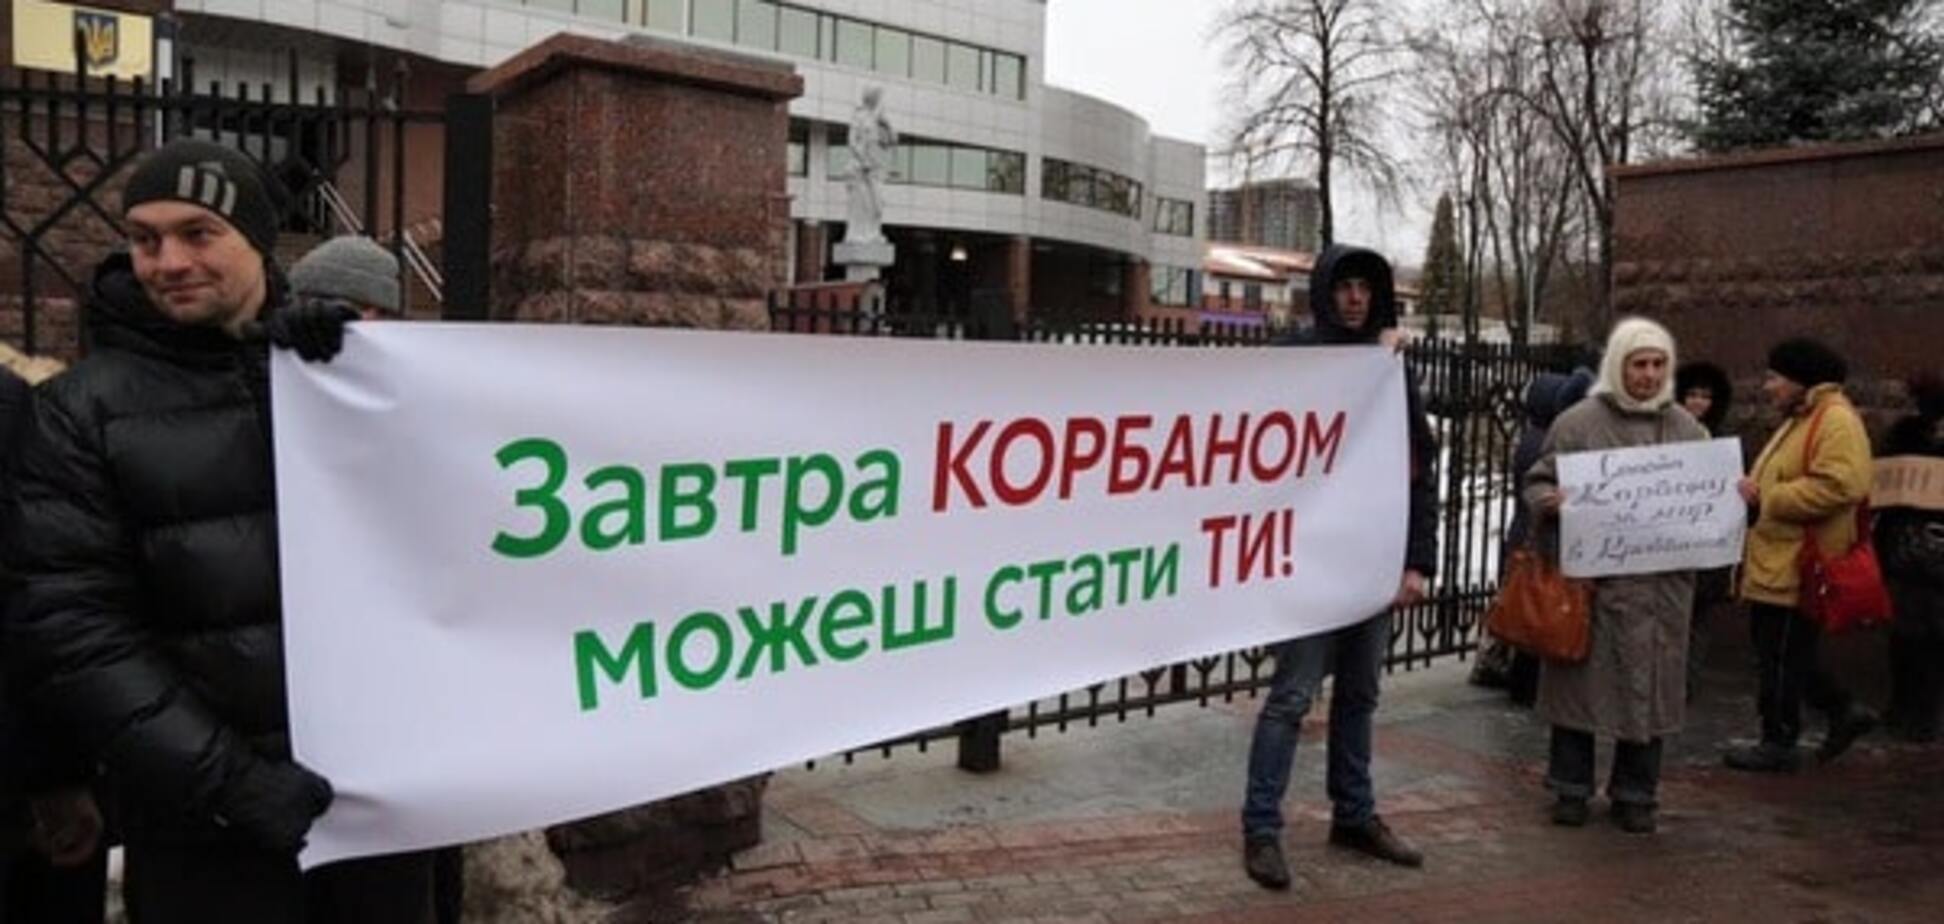 Дело Корбана: перед зданием суда в Киеве собрался многолюдный митинг